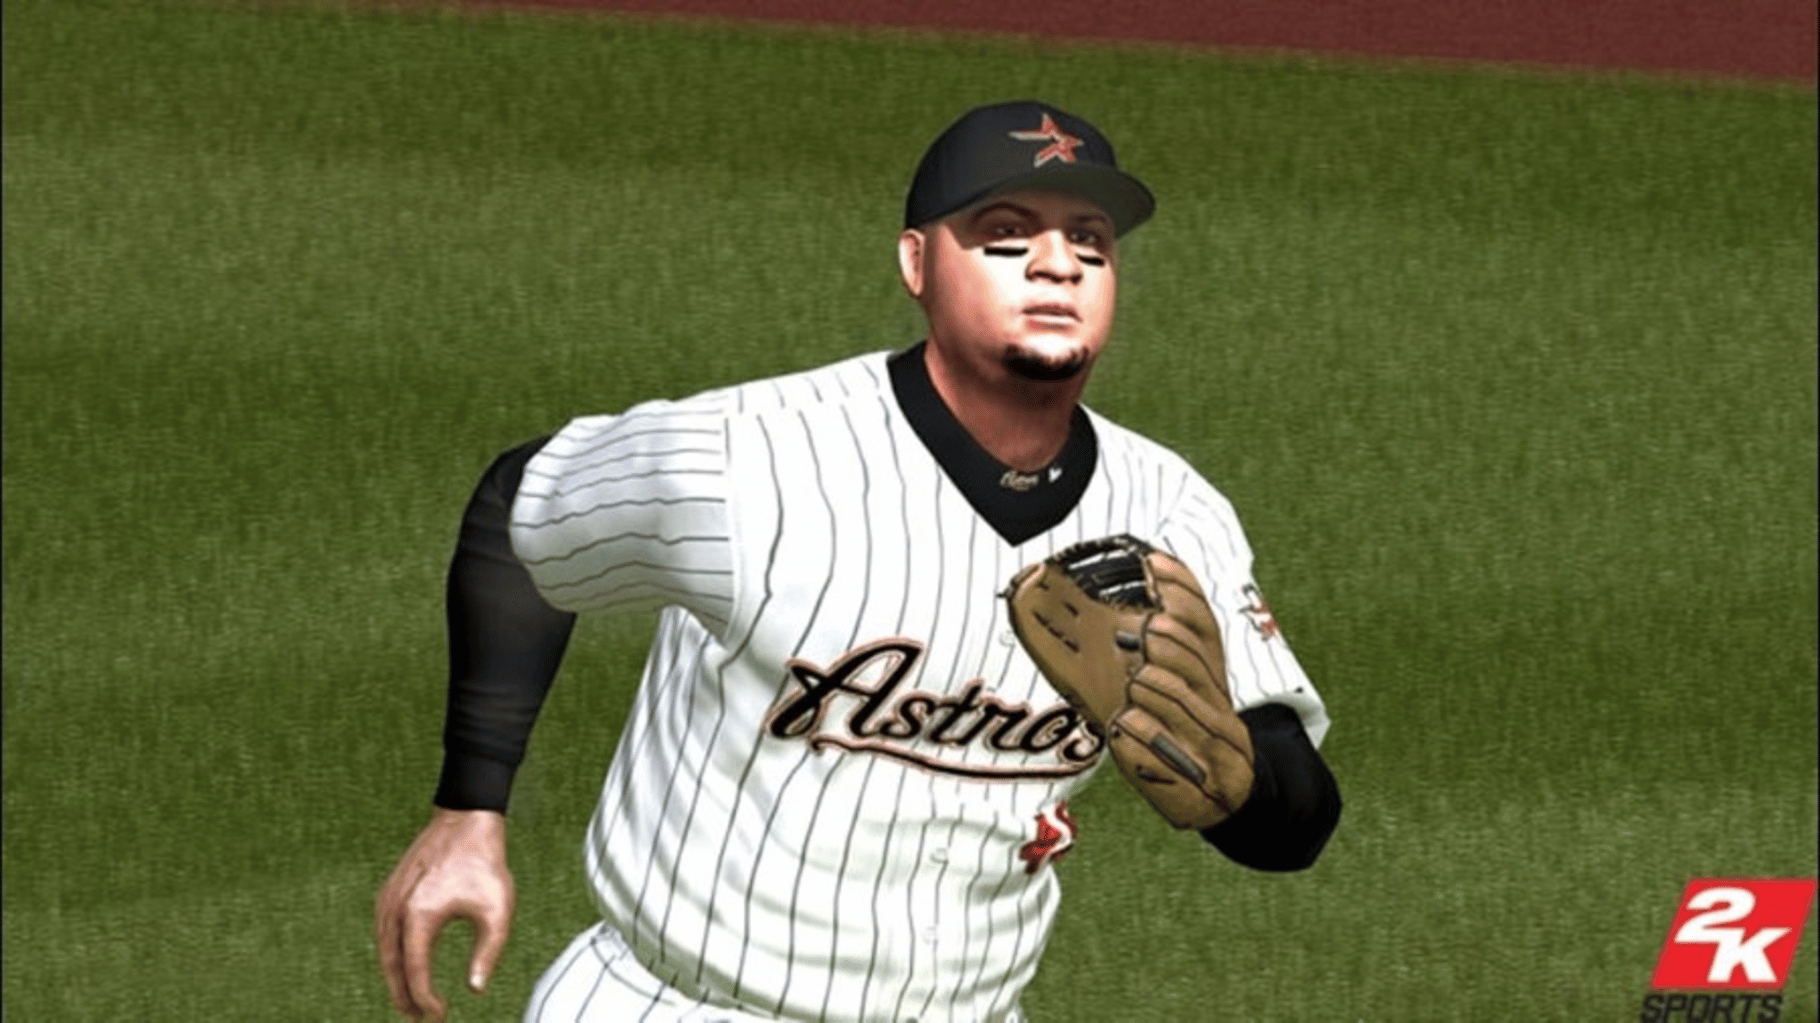 Major League Baseball 2K7 screenshot